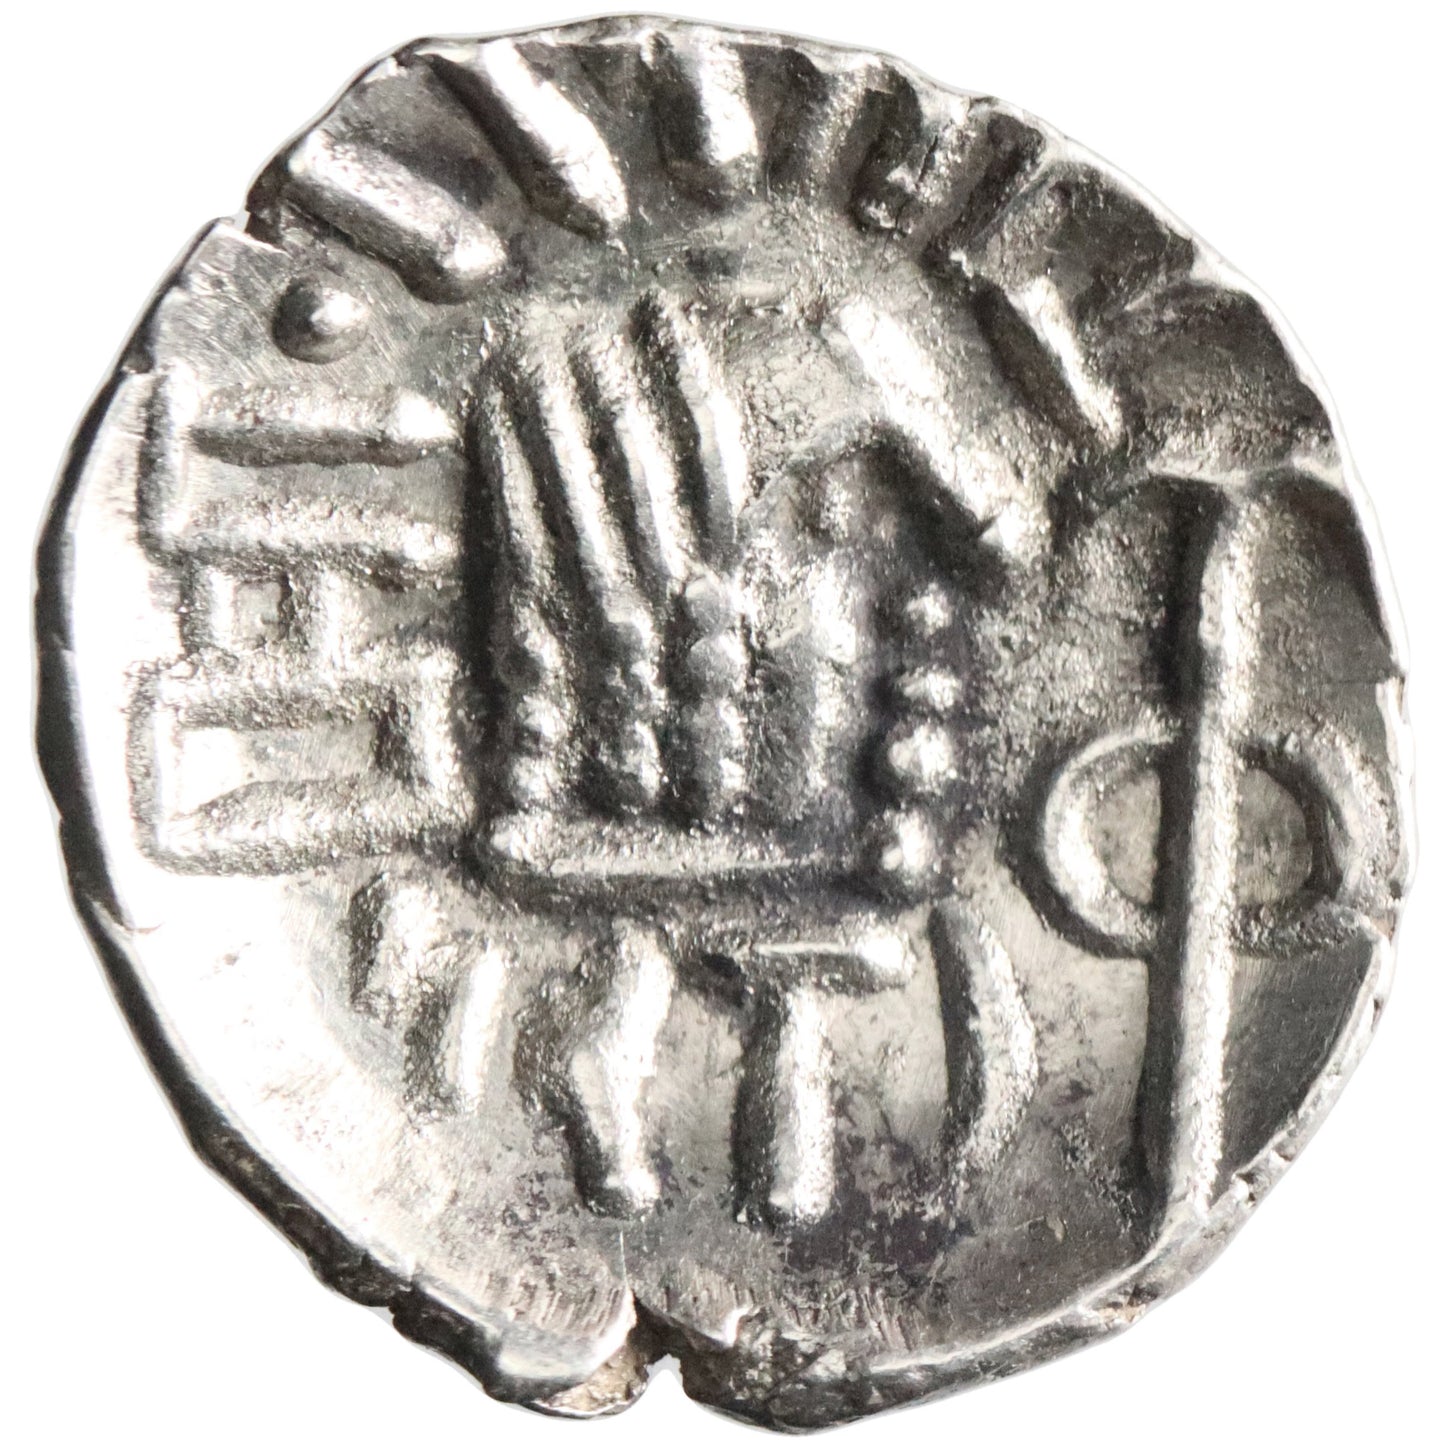 Himyarite, Tha'ran Ya'ub, silver unit, Raydan mint, 175-215 CE, legends in South Arabian script